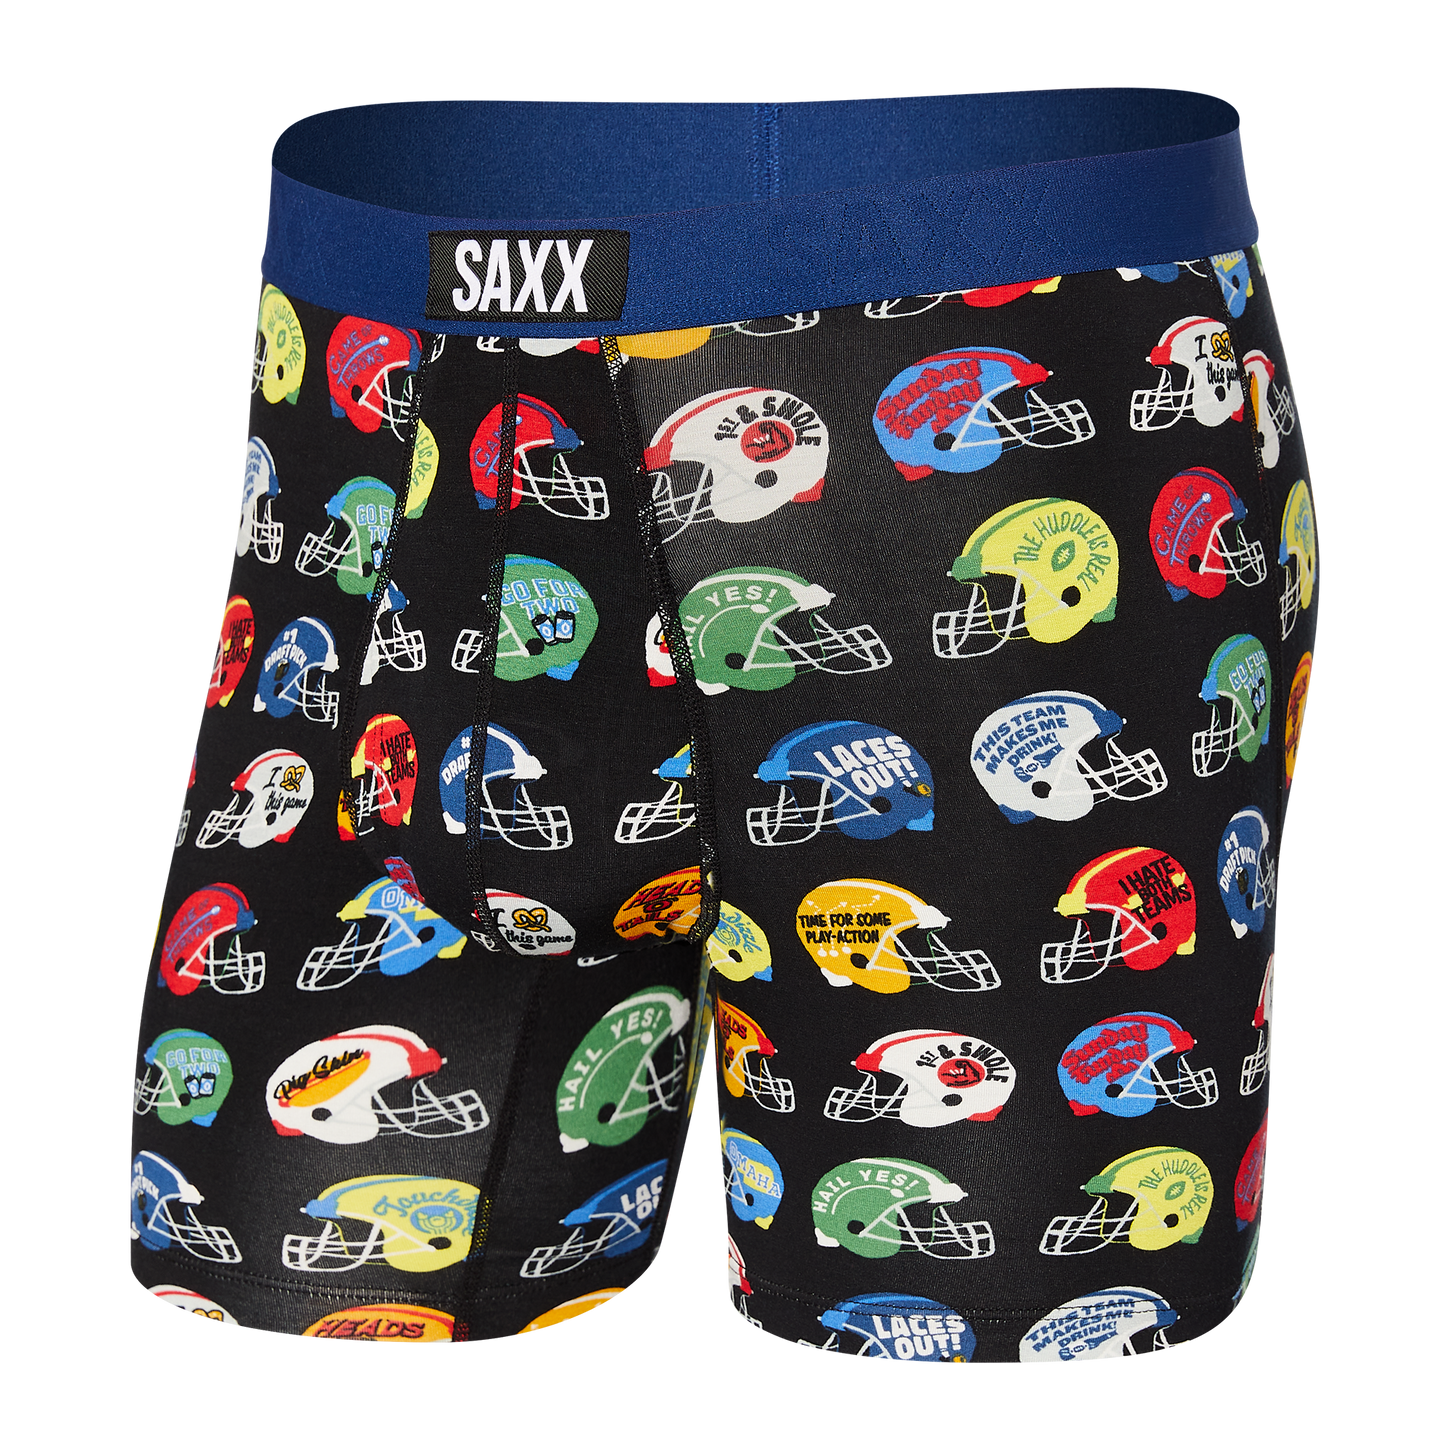 Saxx Men's Ultra Boxer Brief Apparel SAXX Multi The Huddle is Real Small 